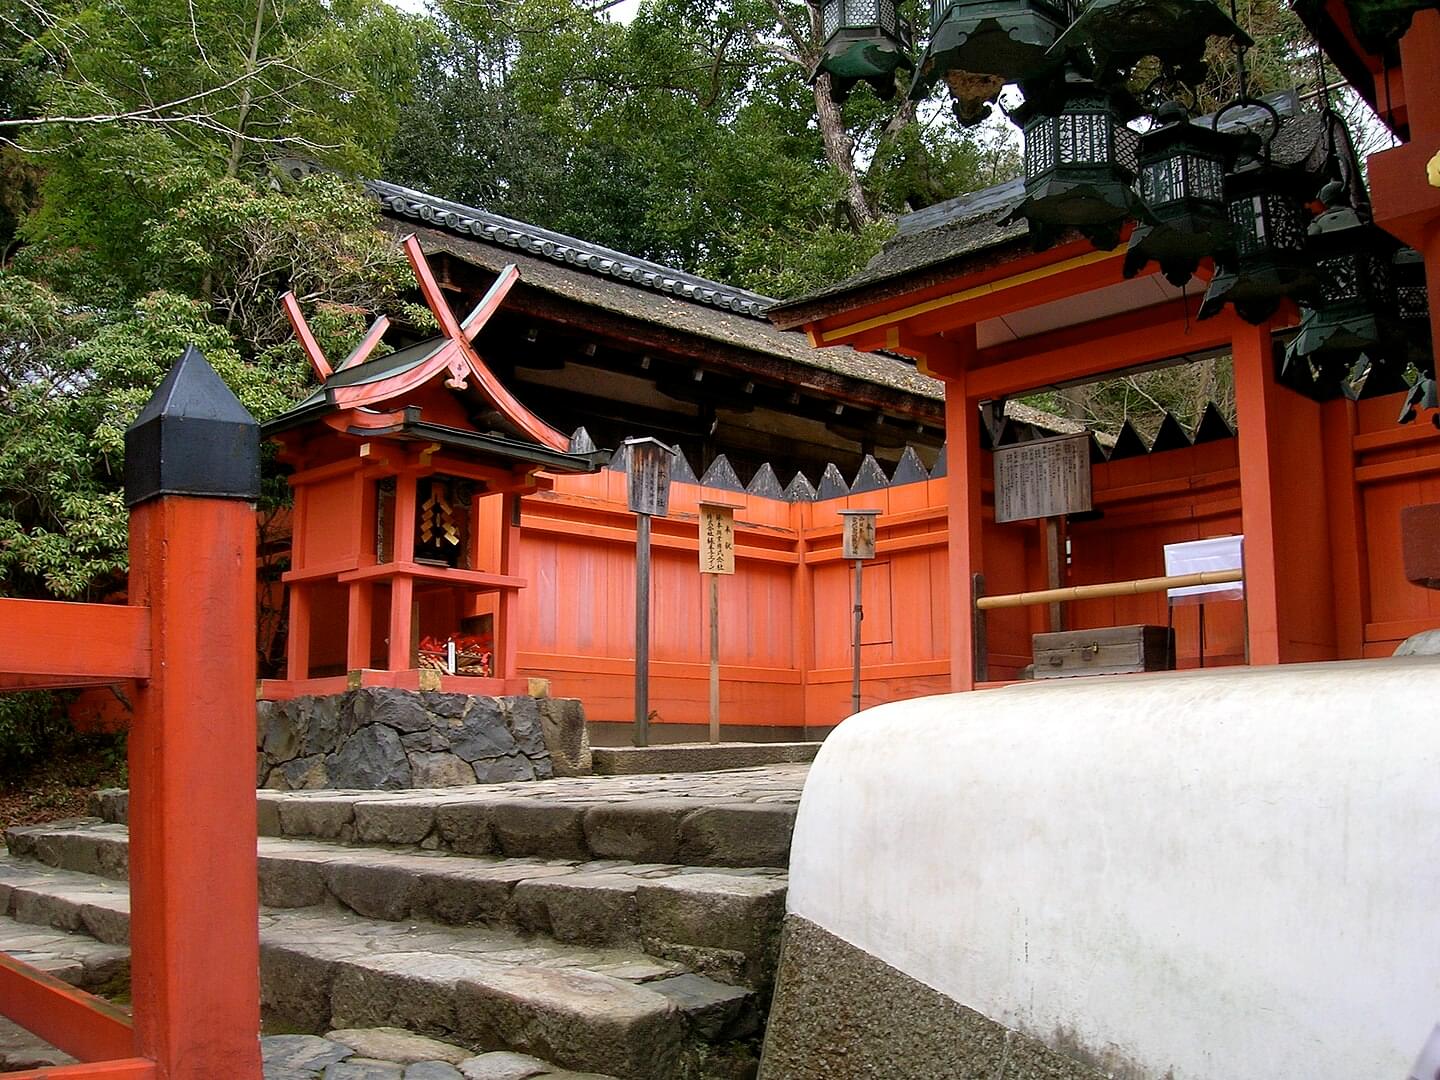 Witness Multiple deities enshrined at Kasuga Taisha Shrine